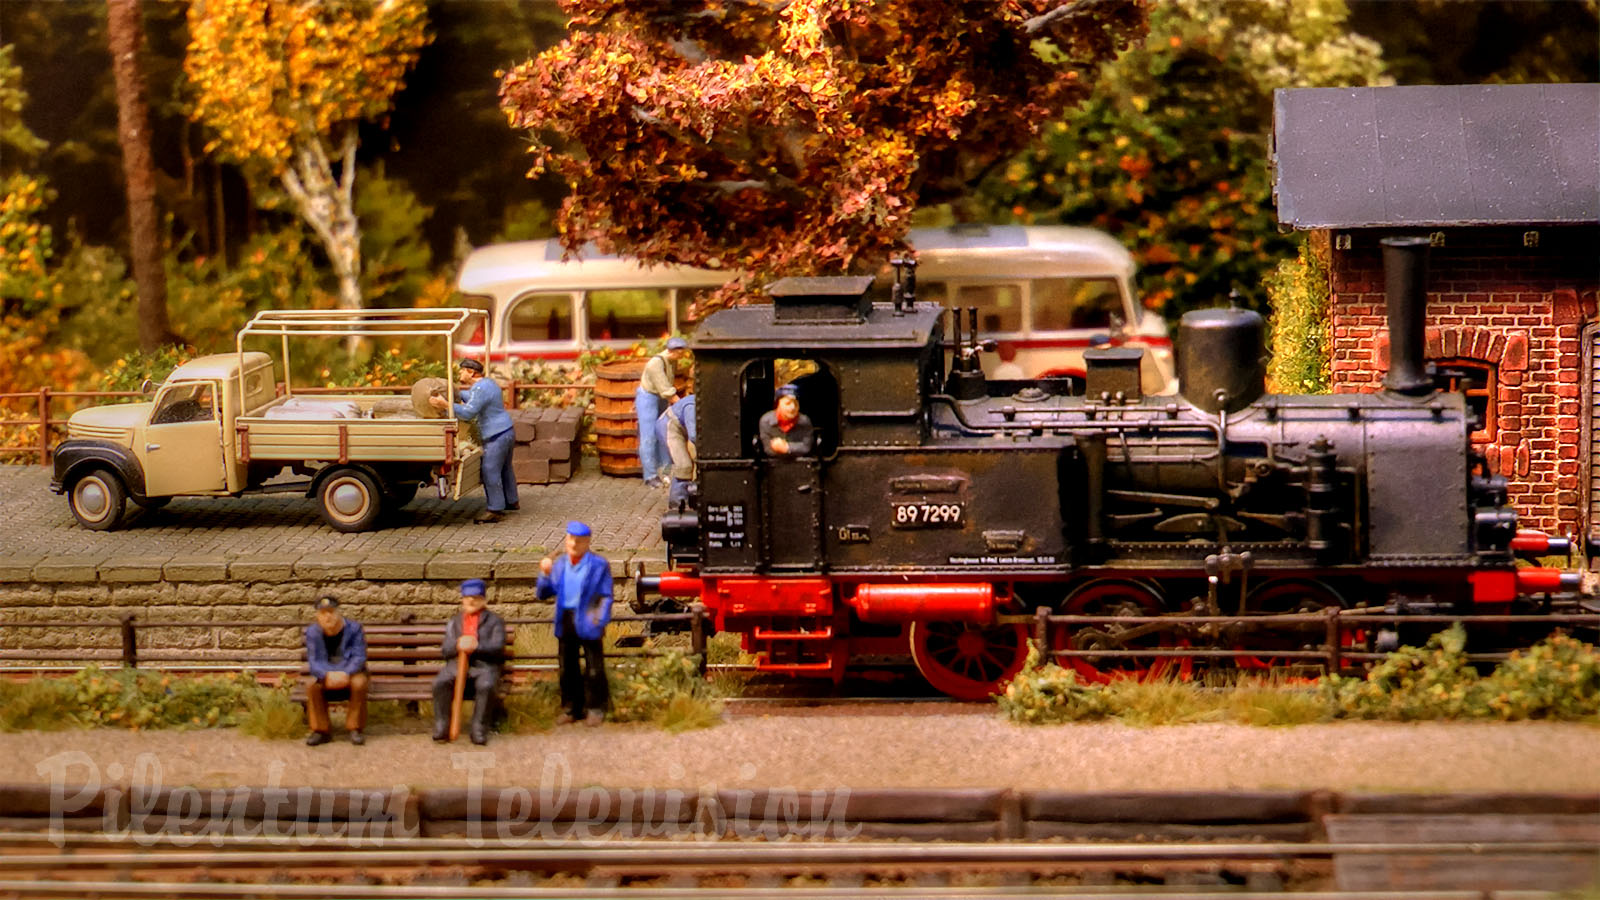 Smuk modeljernbane med gamle damplokomotiver og damptog fra Nordtyskland